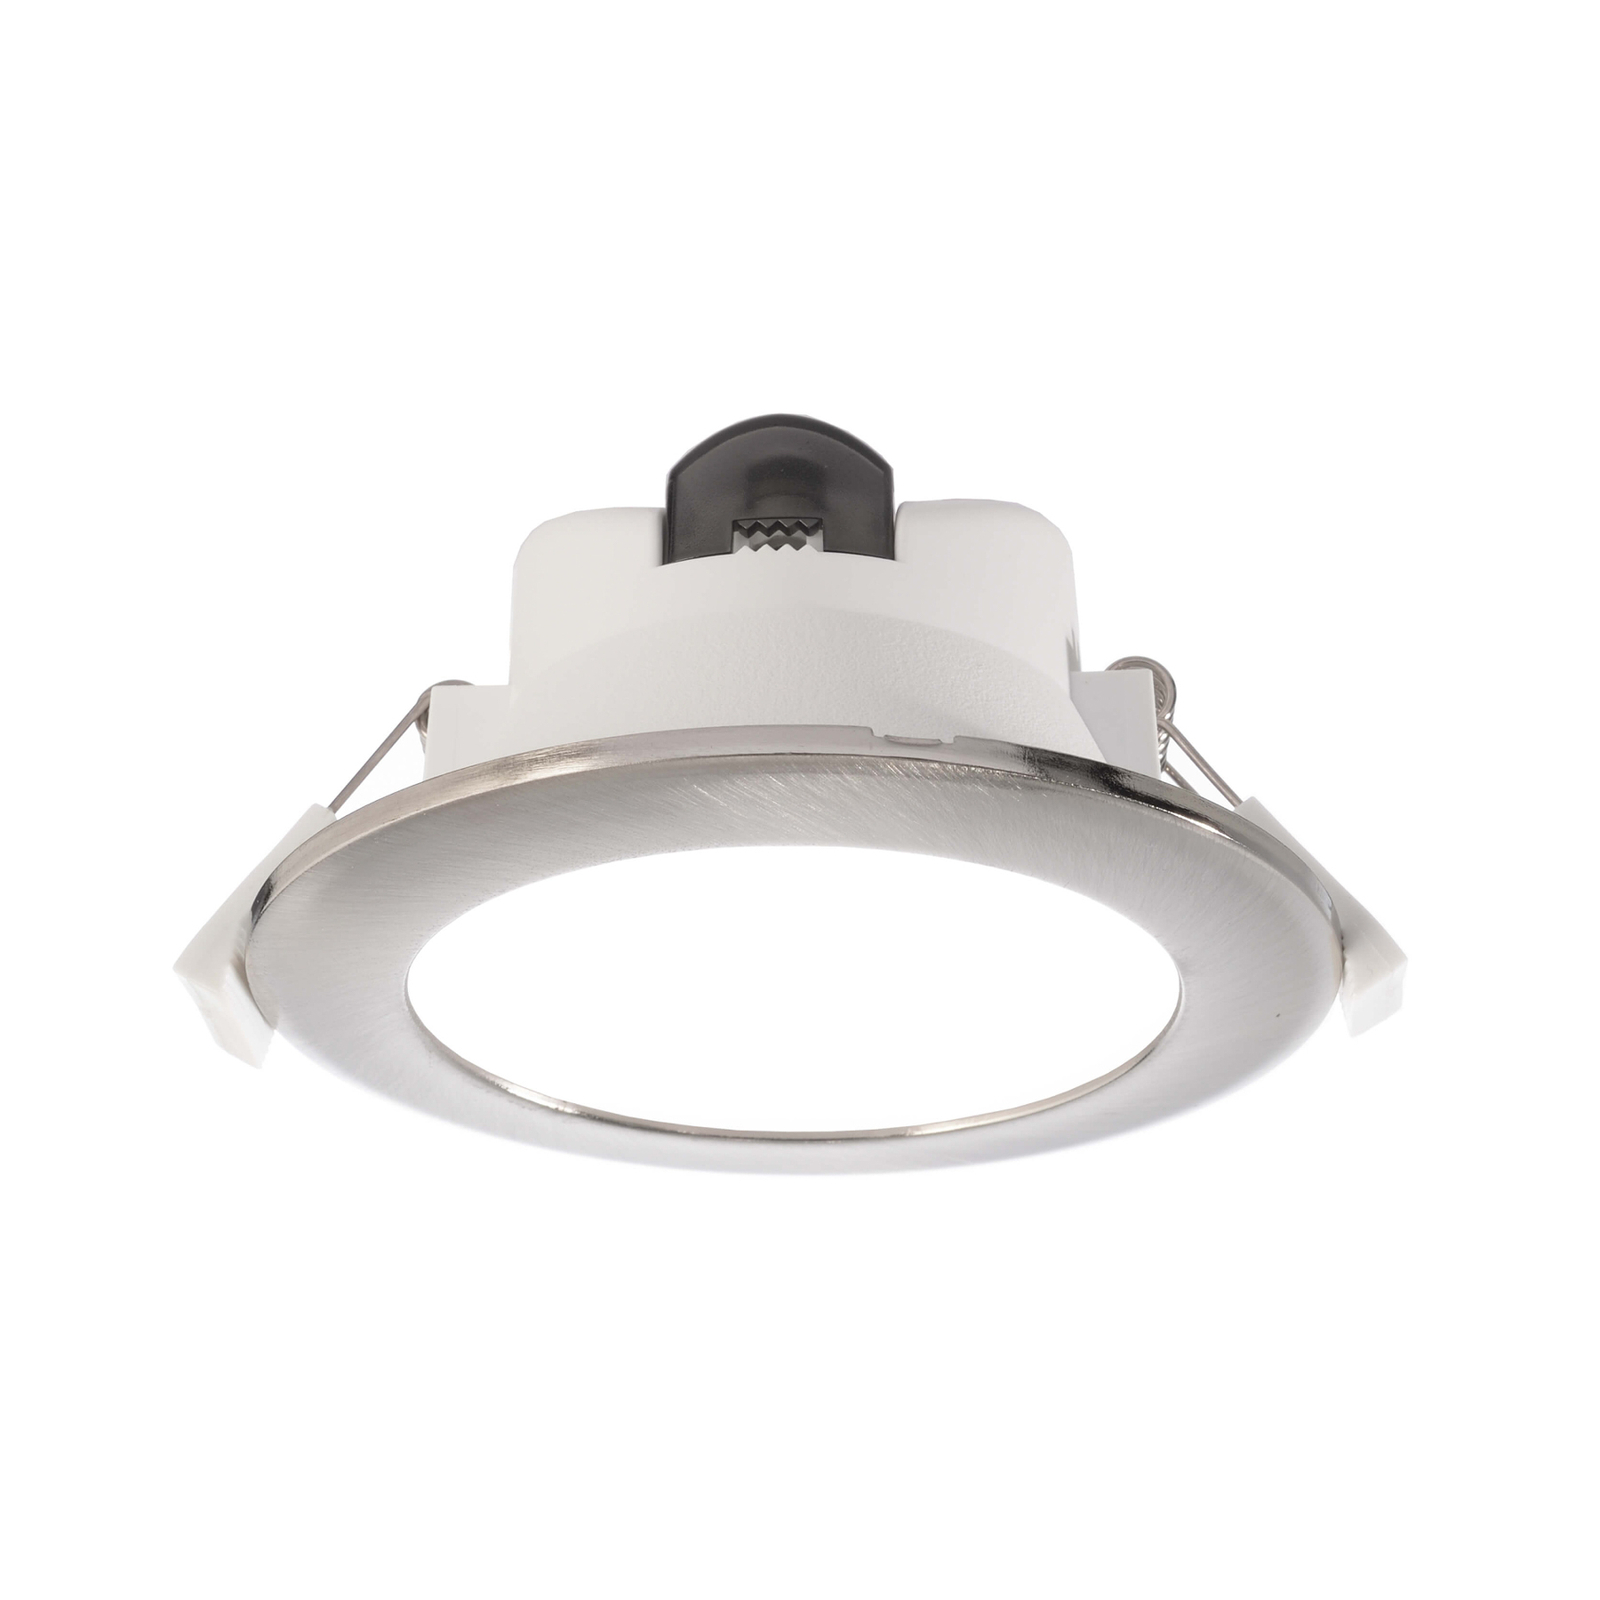 Lampe encastrable LED Acrux 90 blanche, Ø 11,3 cm